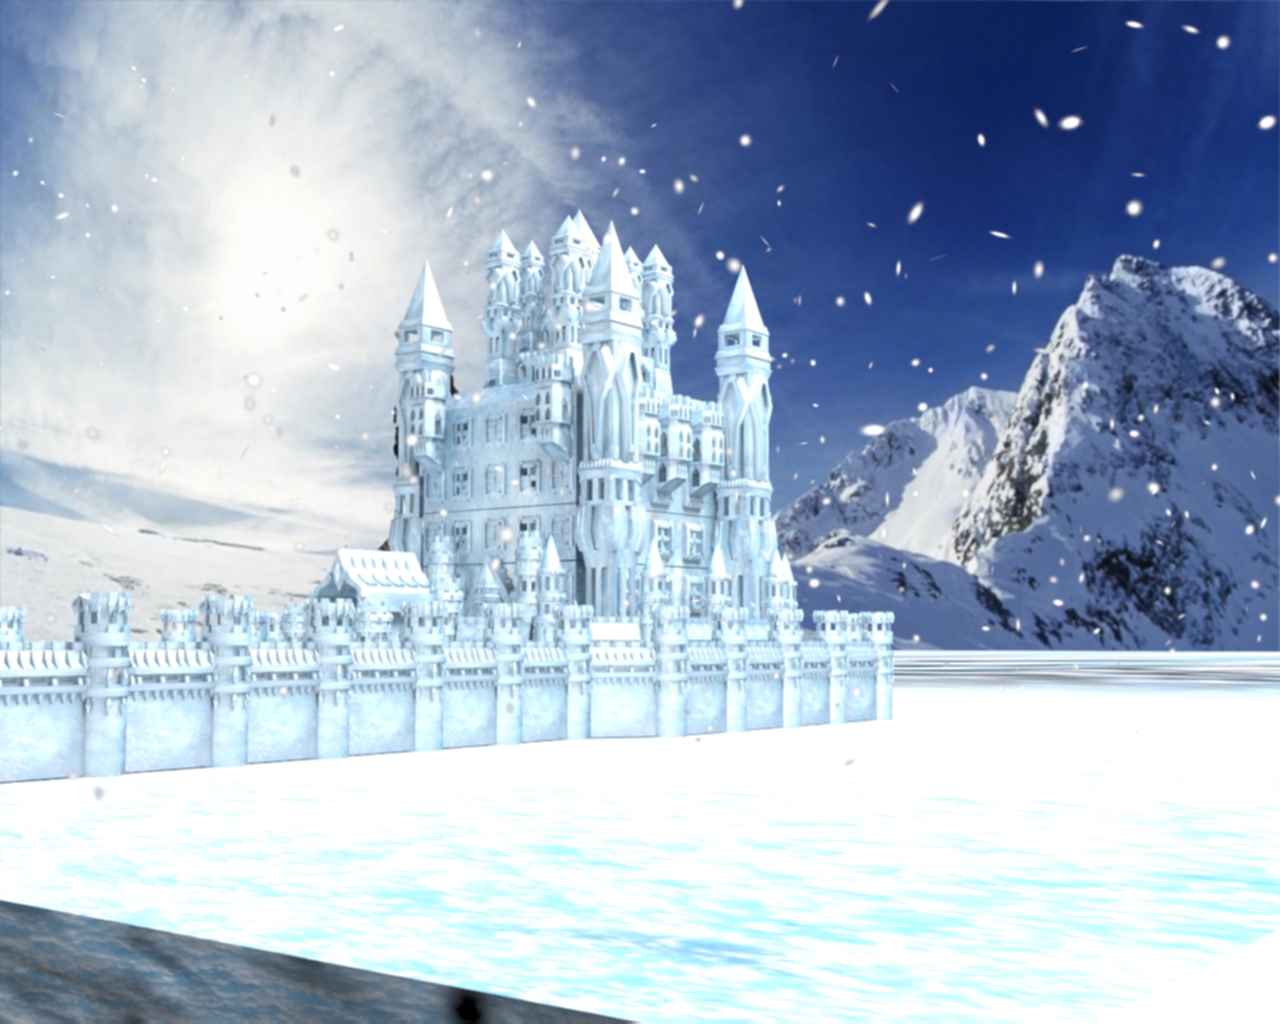 冰霜城堡,以冰雪为主题设计的城堡